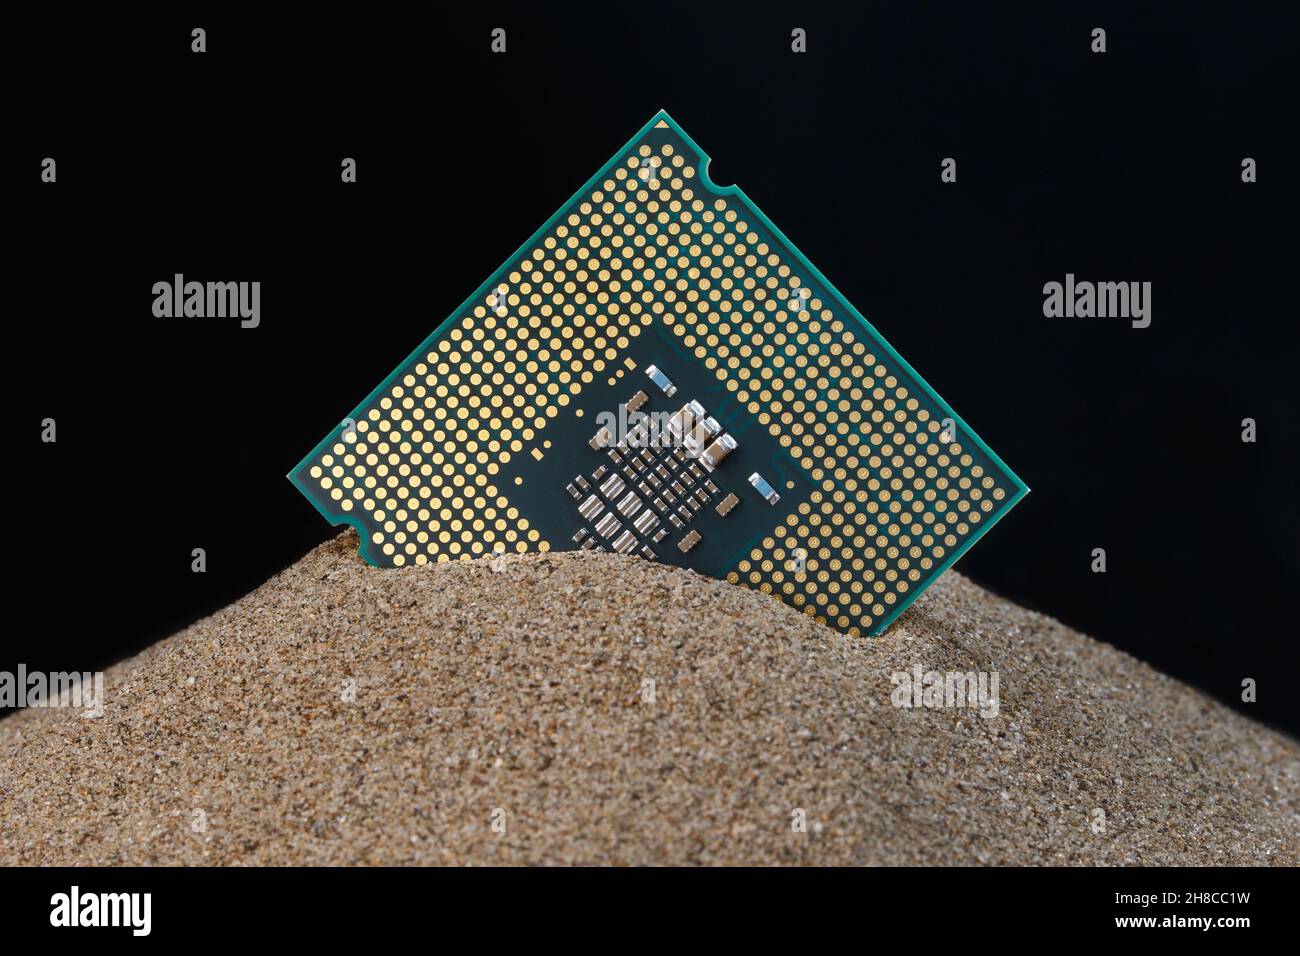 Mikroprozessor ragt aus dem Sand. Konzept zur Herstellung von Silizium-Halbleitern aus Sand. Stockfoto